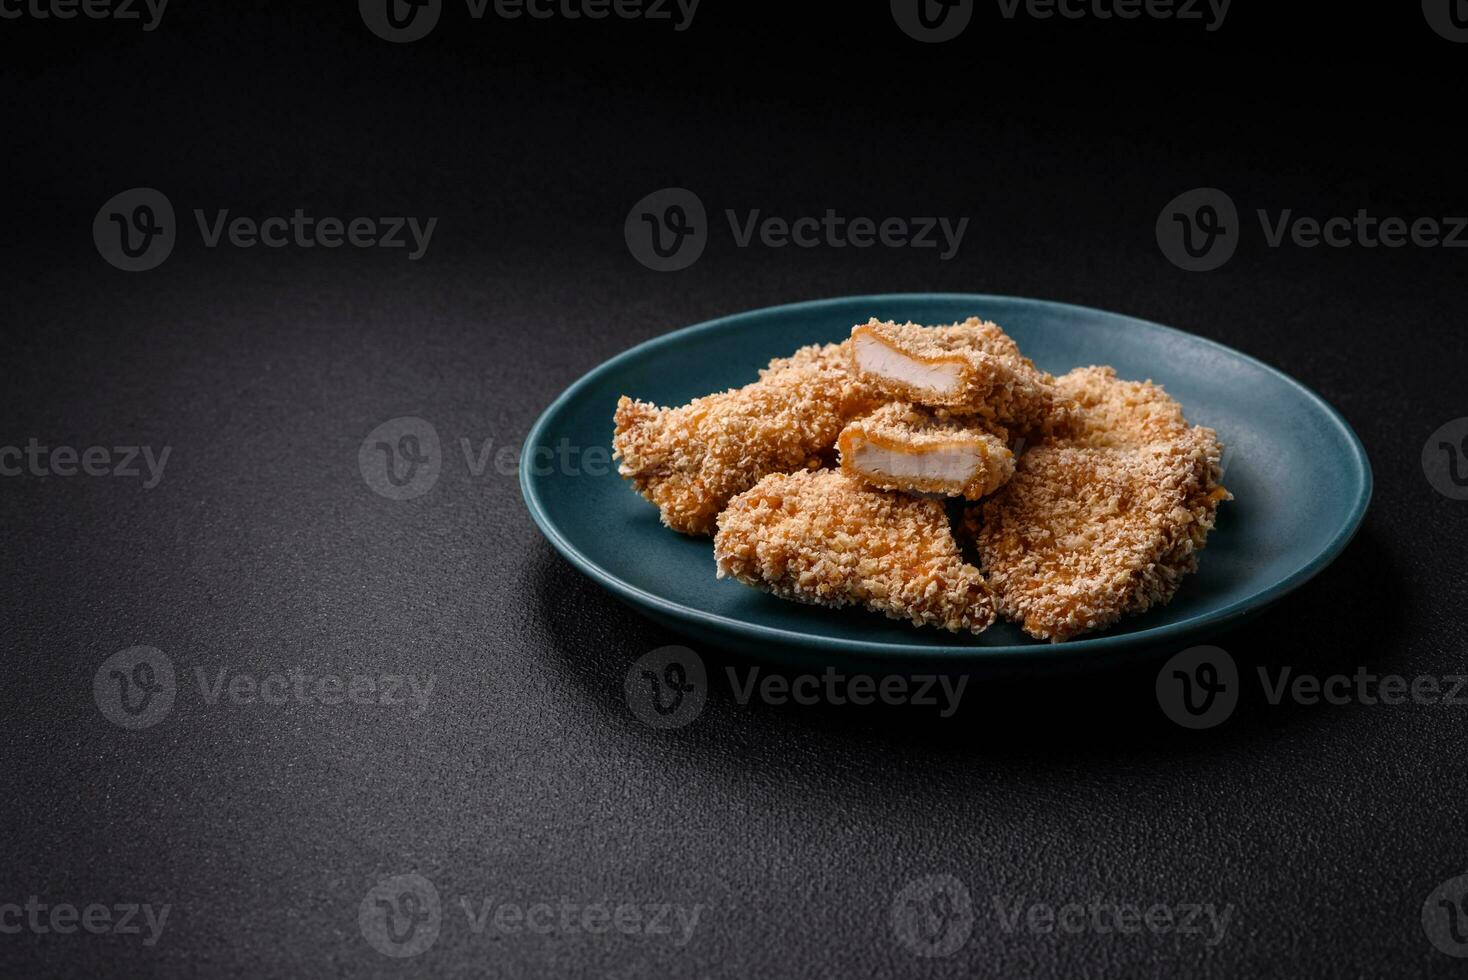 deliciosos nuggets de pollo crujientes y frescos sobre un fondo de hormigón oscuro foto